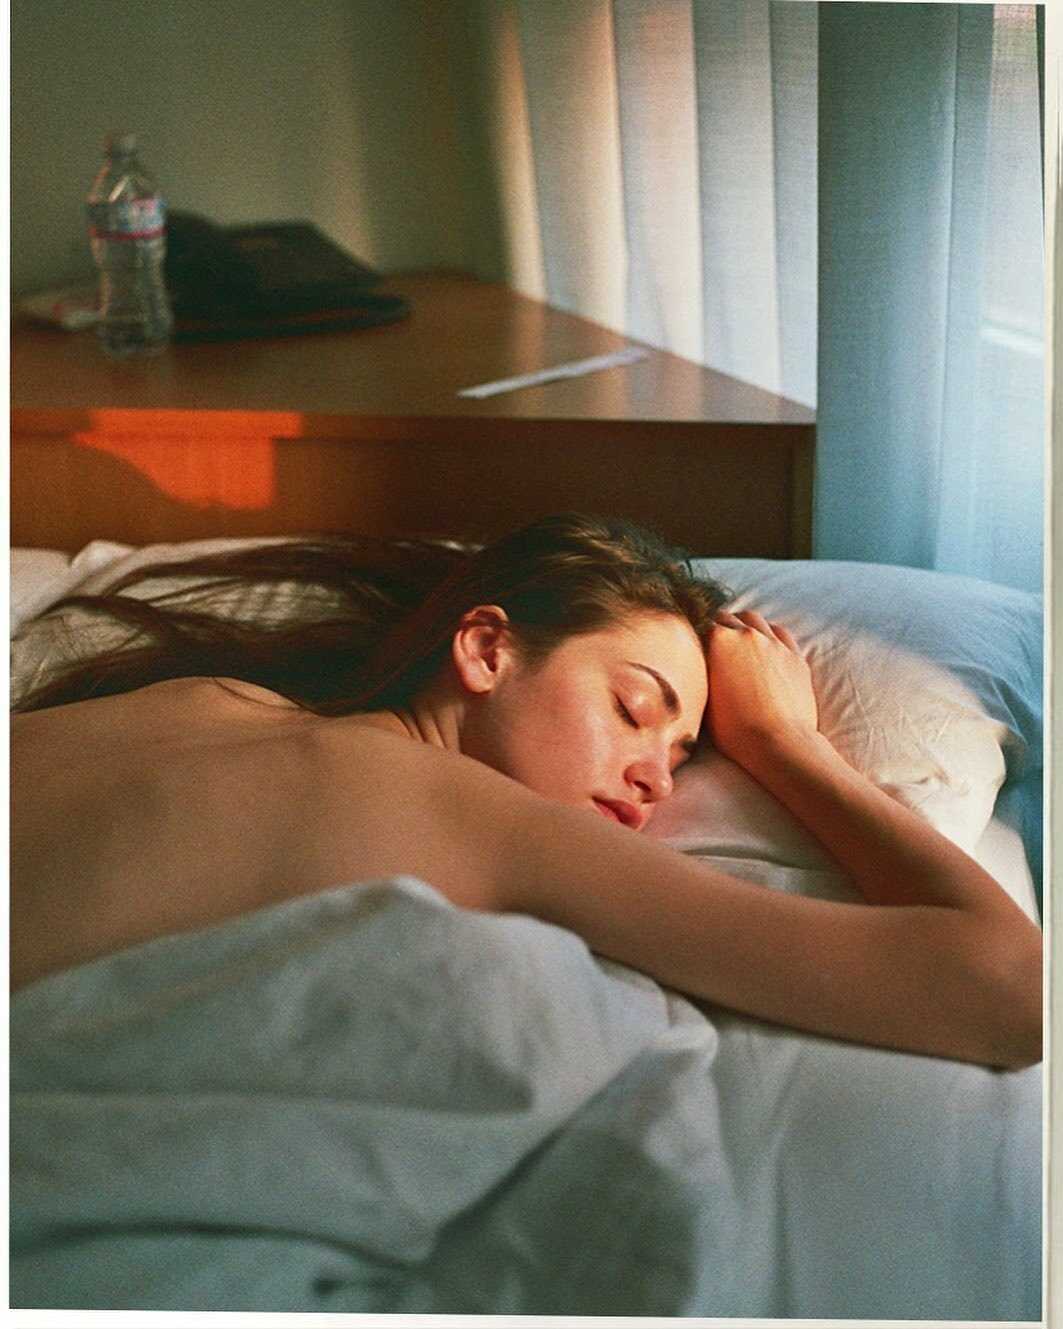 Η μουνάρα Julia Danko σε γυμνές φωτογραφίες στο σπίτι της